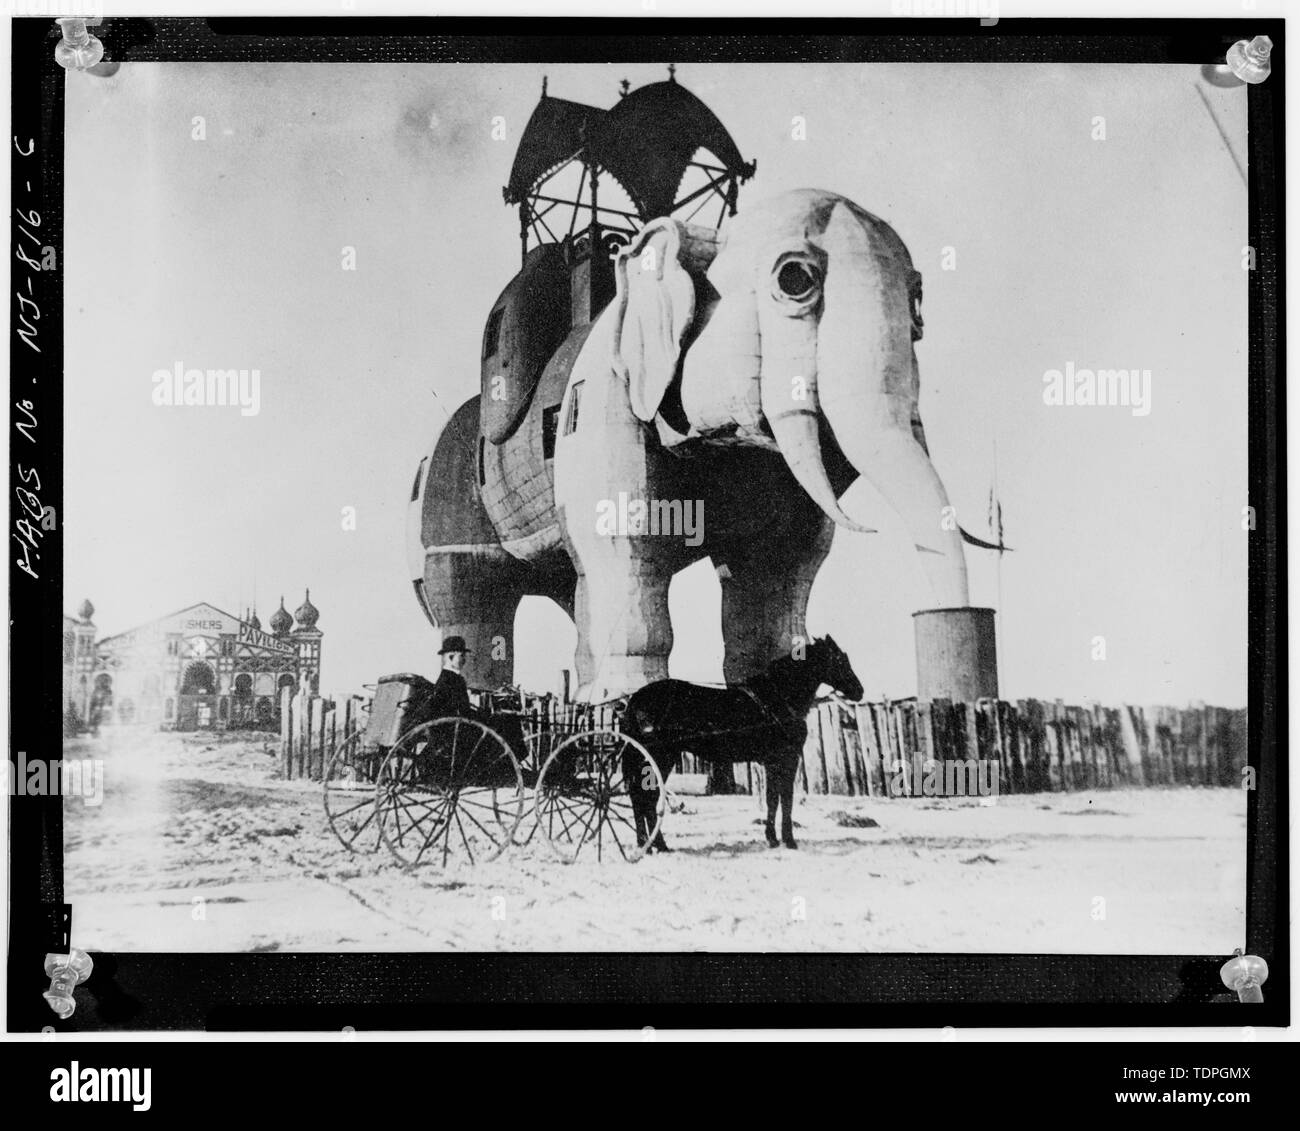 Photographe inconnu ca. 1895 VUE DEPUIS LE SUD-EST (REMARQUE L'ORIGINAL HOWDAH) - L'Éléphant de Margate, Atlantic Avenue et Decatur Street, Margate City, comté de l'Atlantique, NJ Banque D'Images